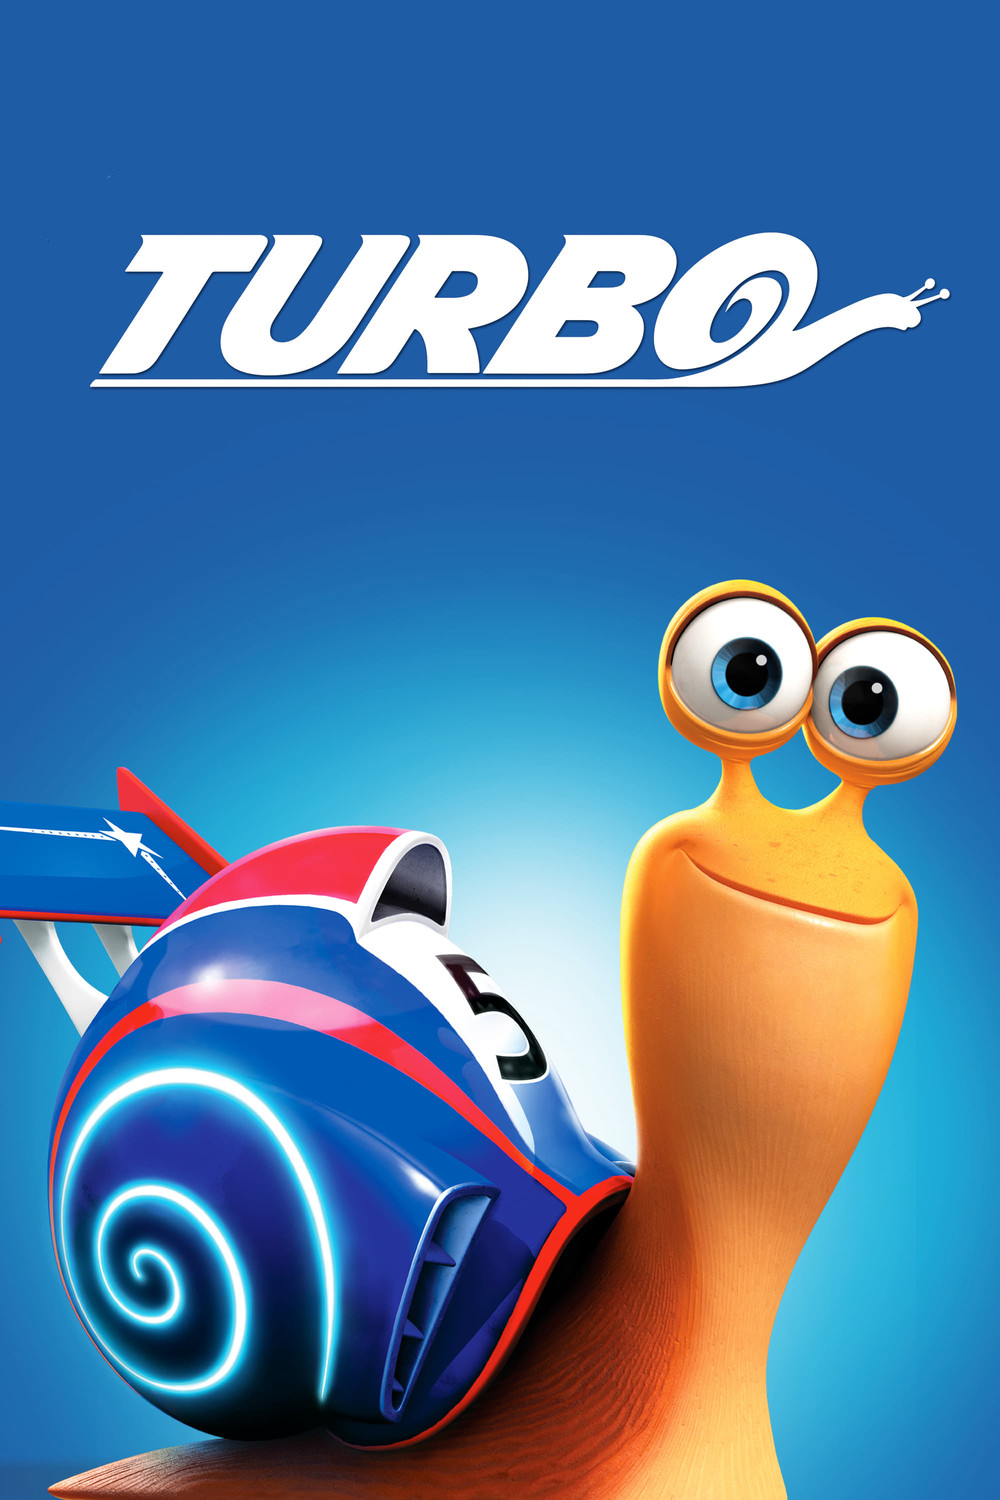 ტურბო / Turbo